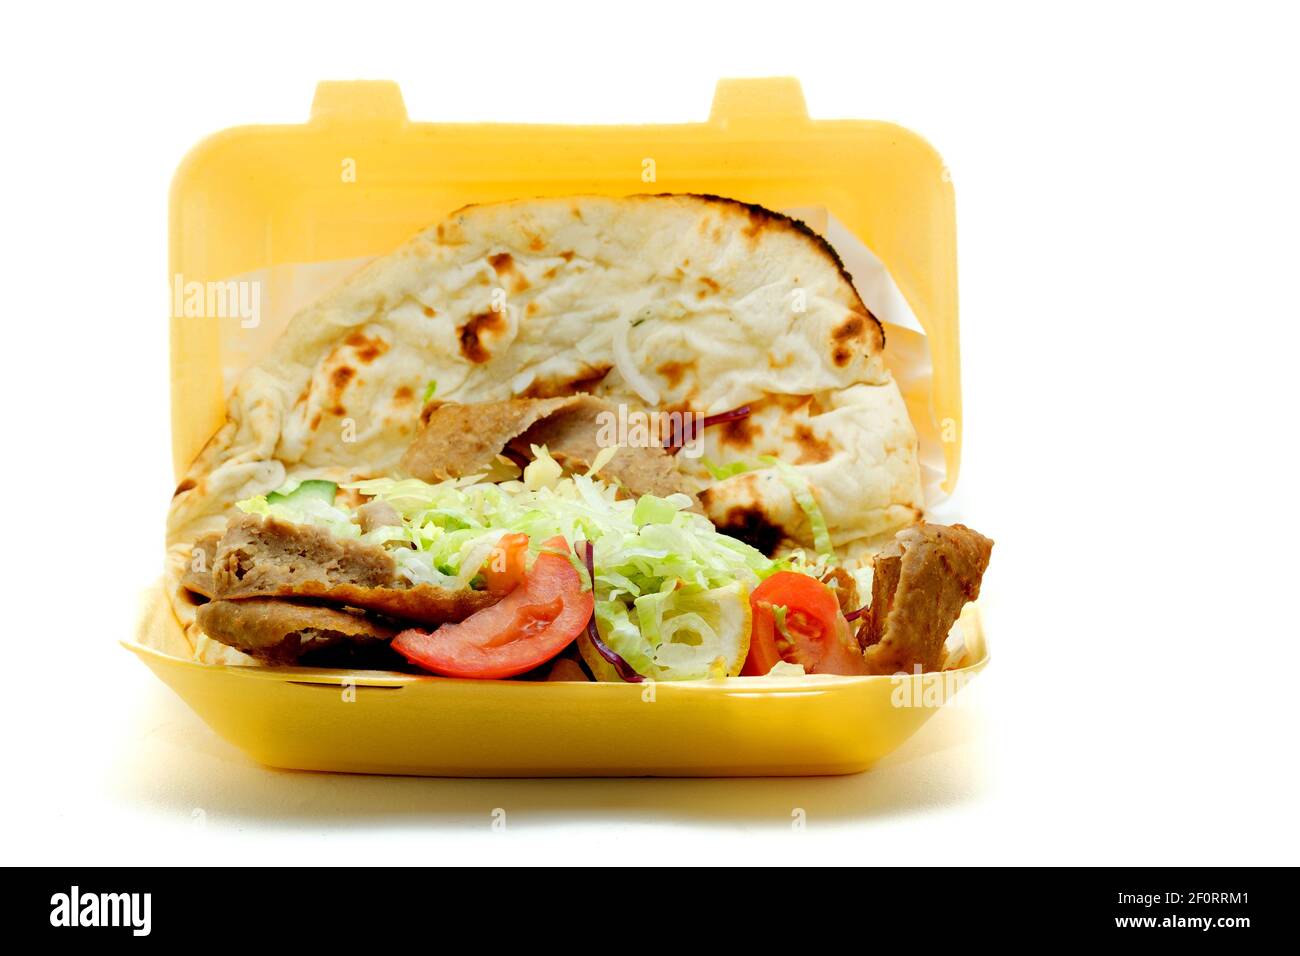 Un à emporter Doner Kebab, ou kebab donneur, servi avec de la salade et enveloppé dans un pain Nan. Le kebab a été vendu dans un récipient en polystyrène jetable. Banque D'Images